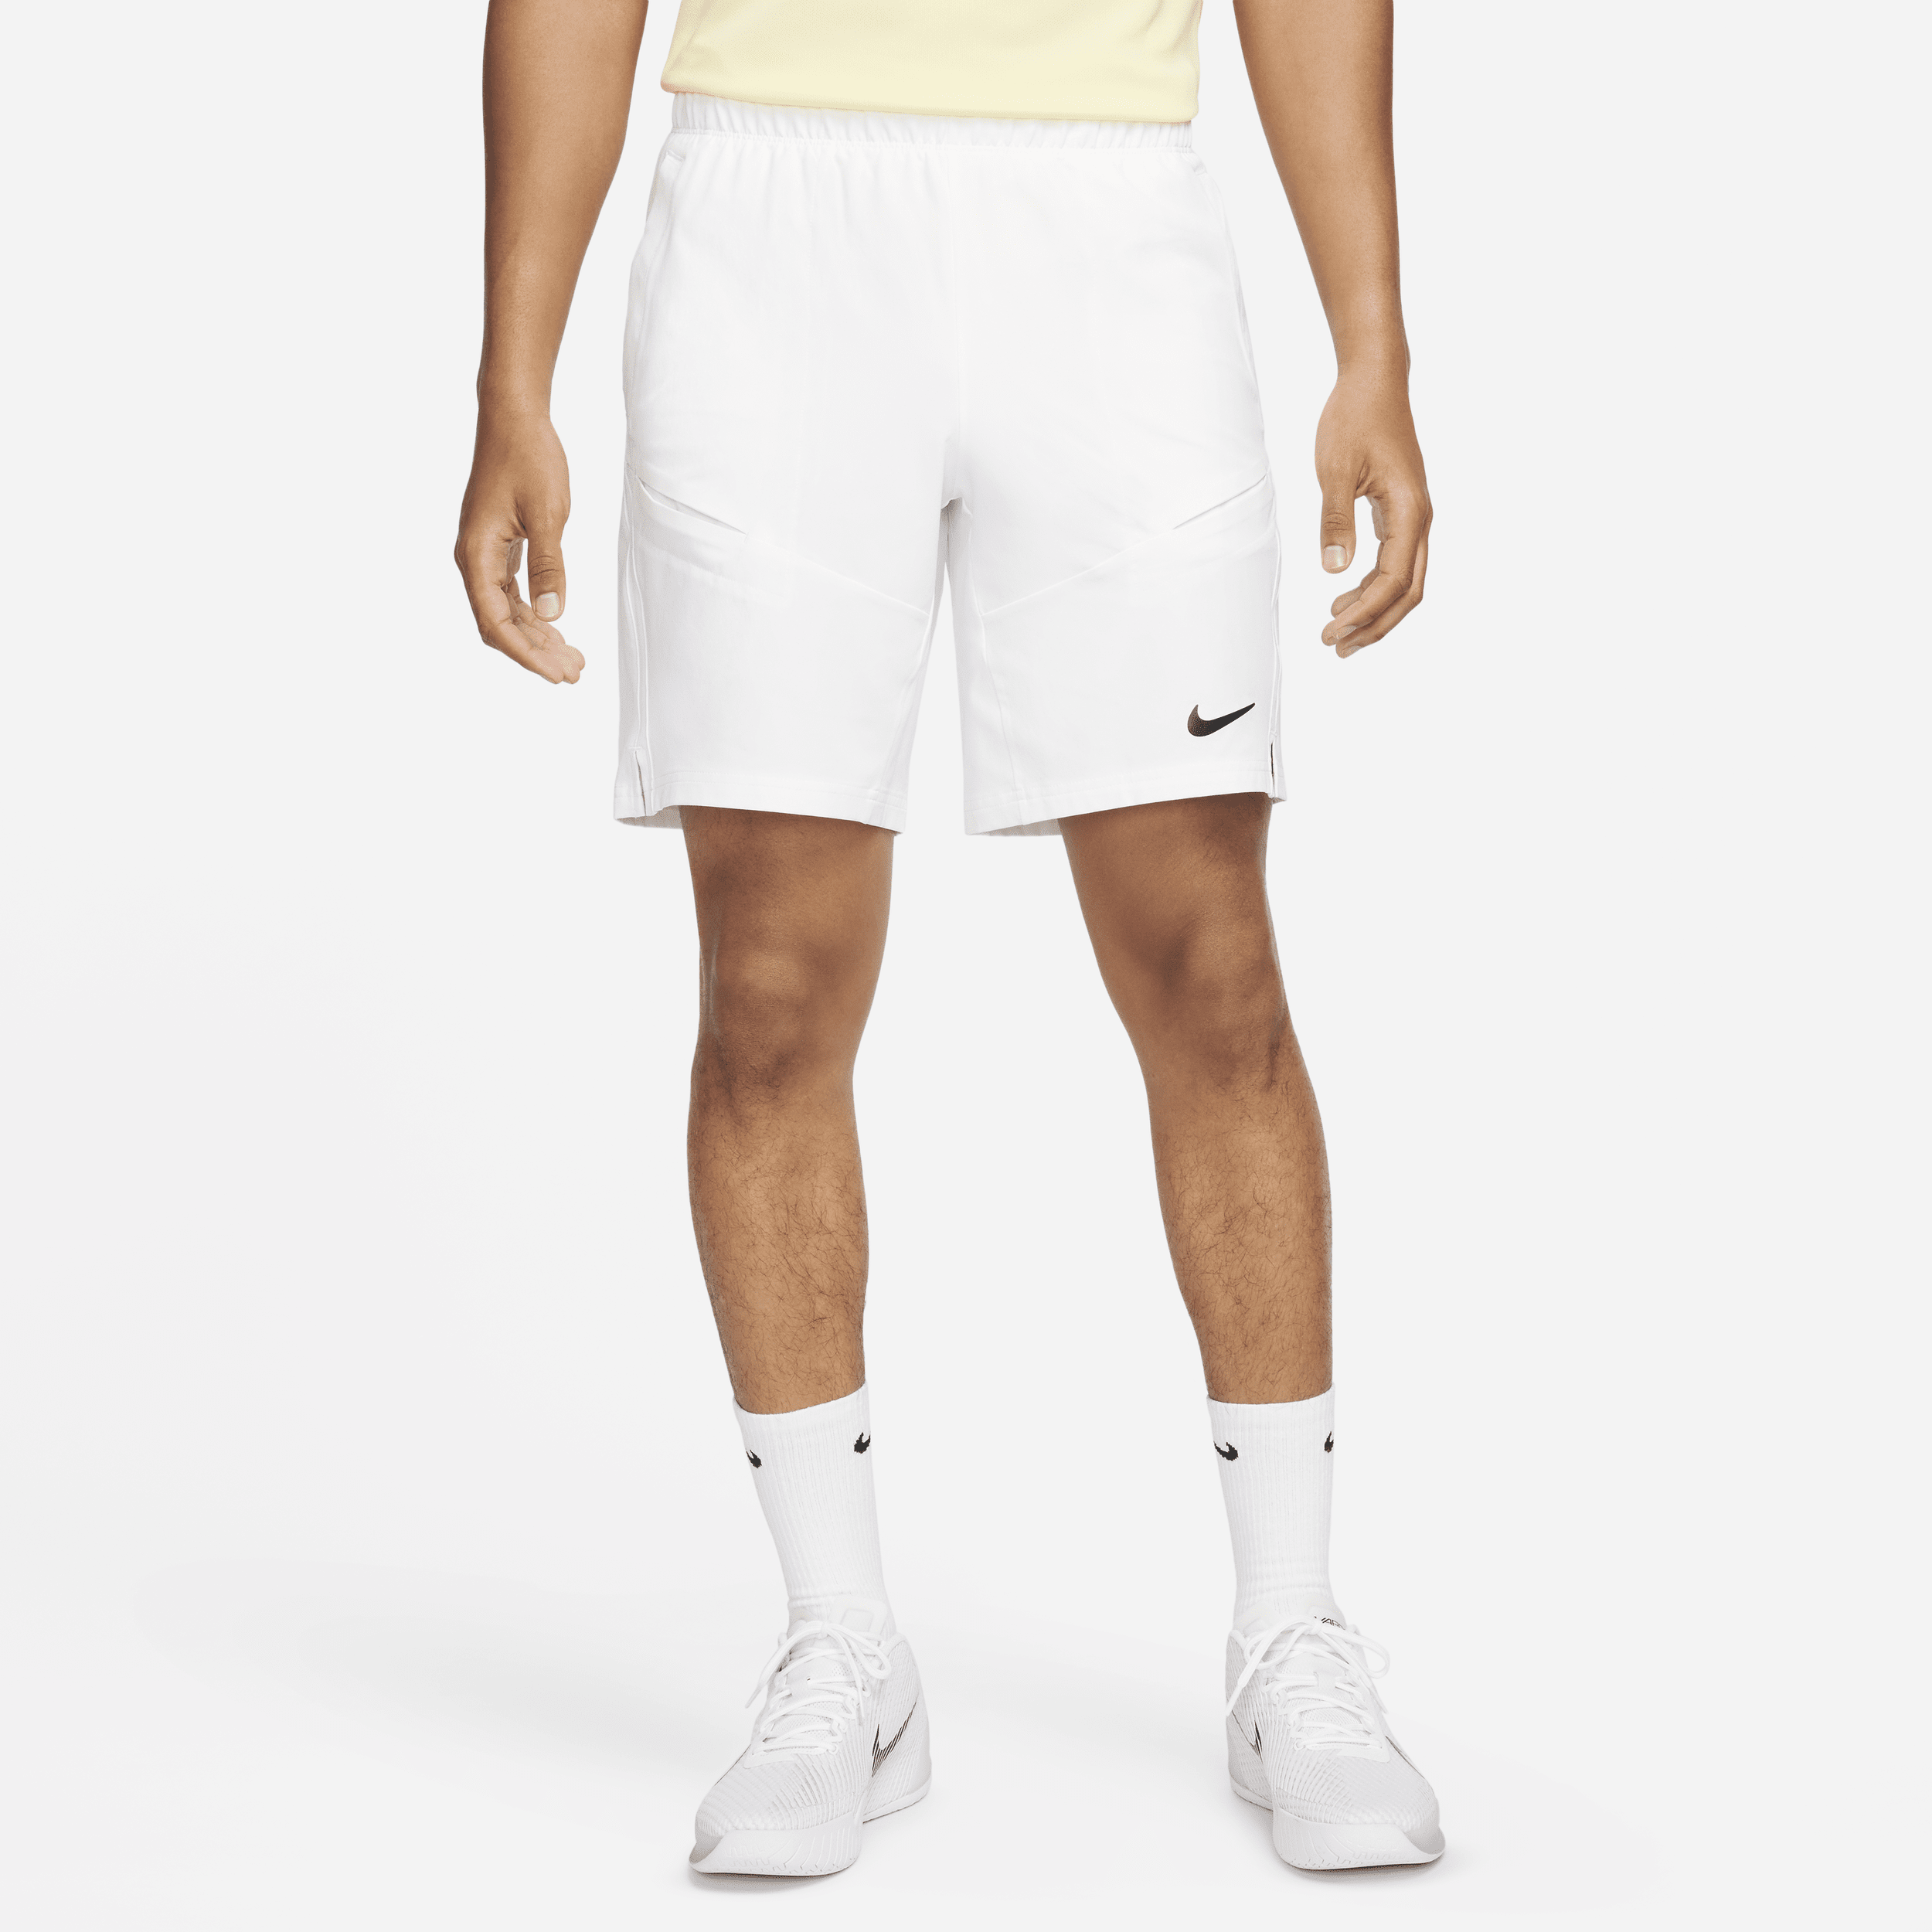 NikeCourt Advantage-tennisshorts (23 cm) til mænd - hvid